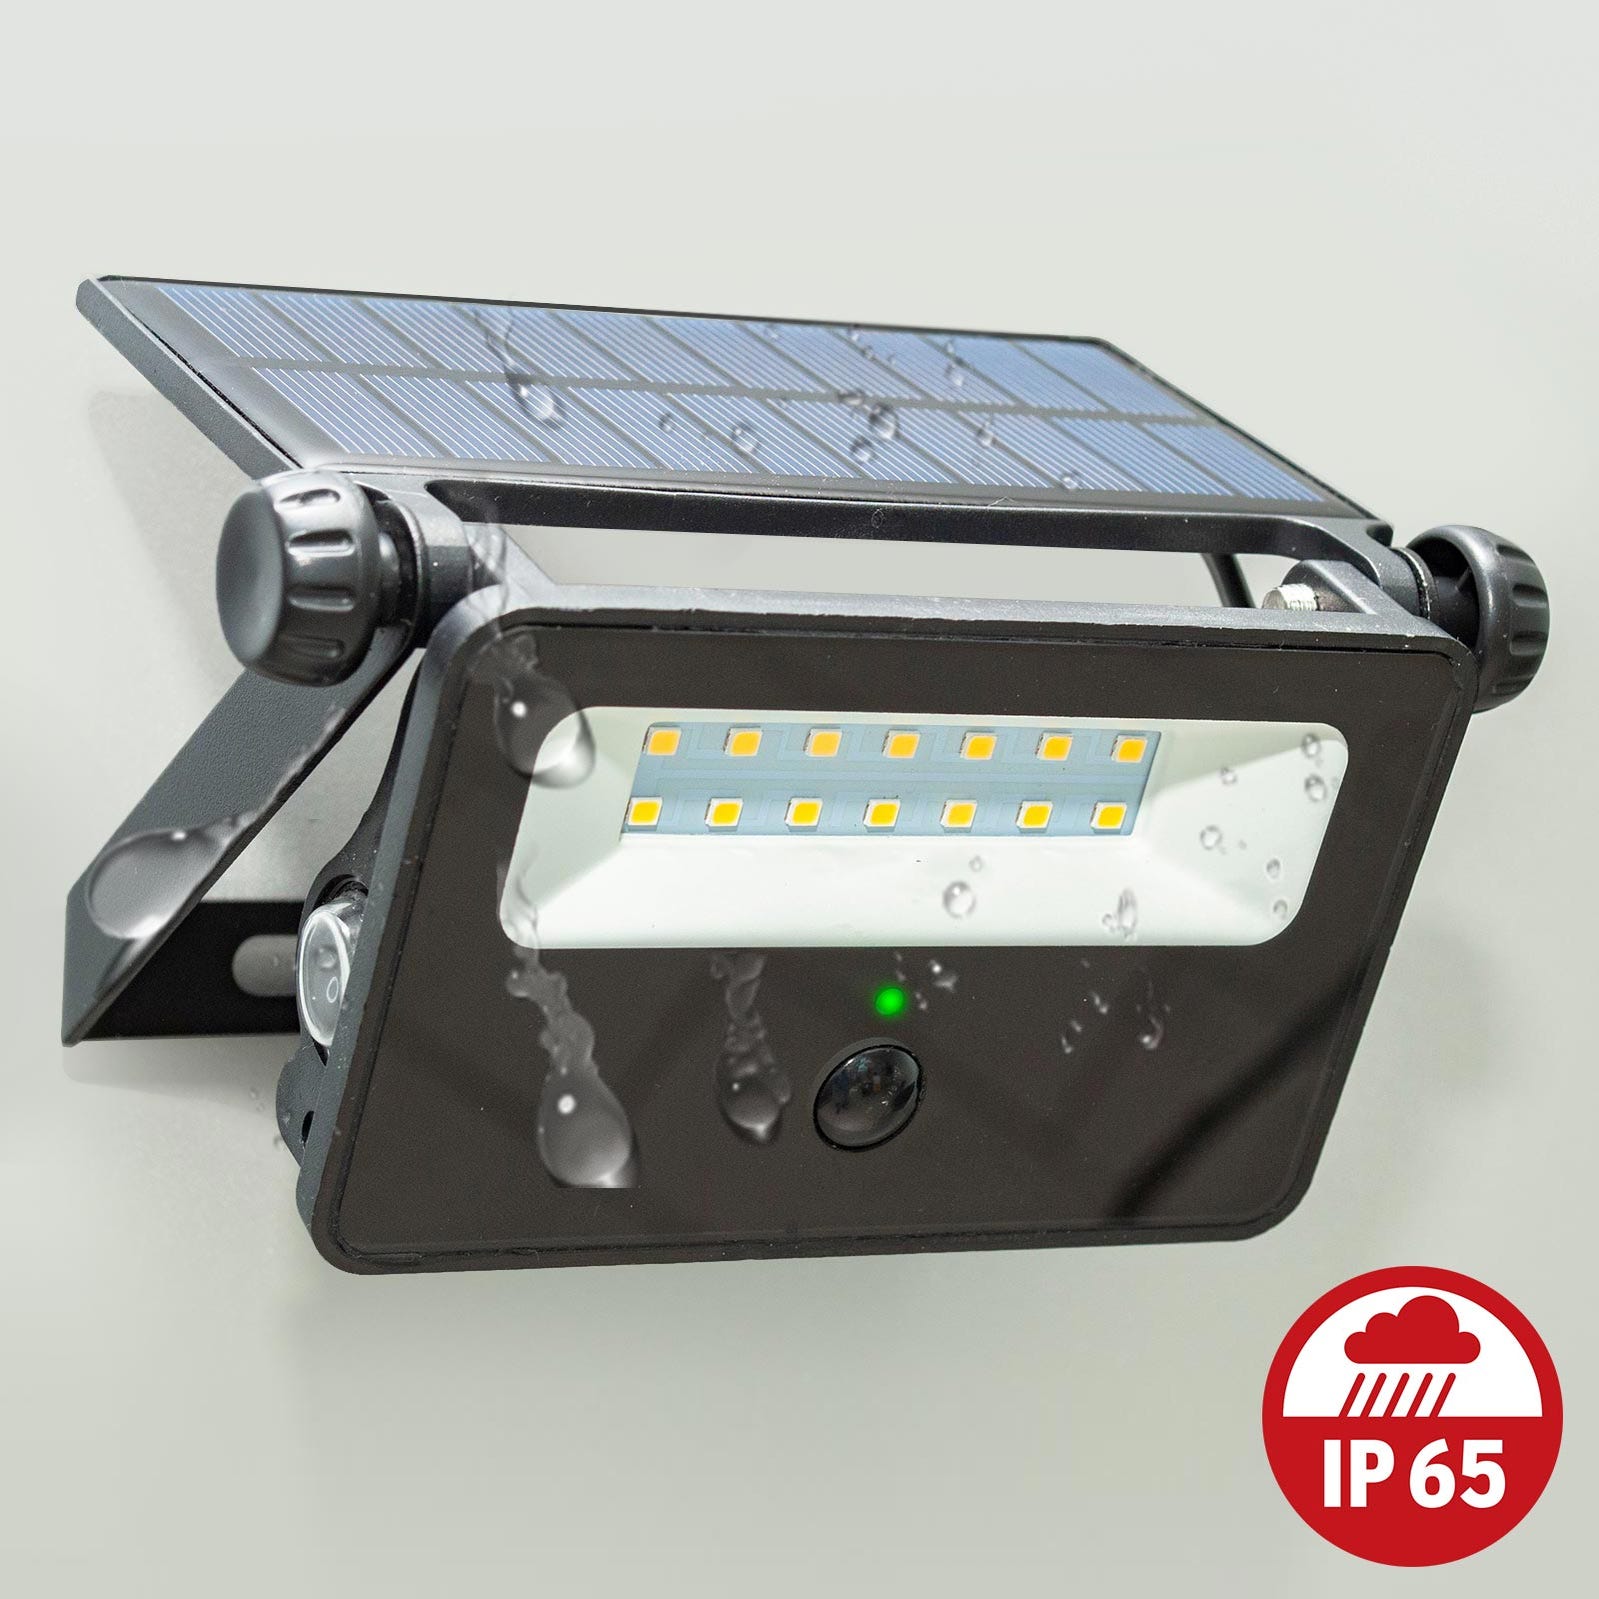 Spot solaire IP65 applique murale rechargeable LED 8W mouvement